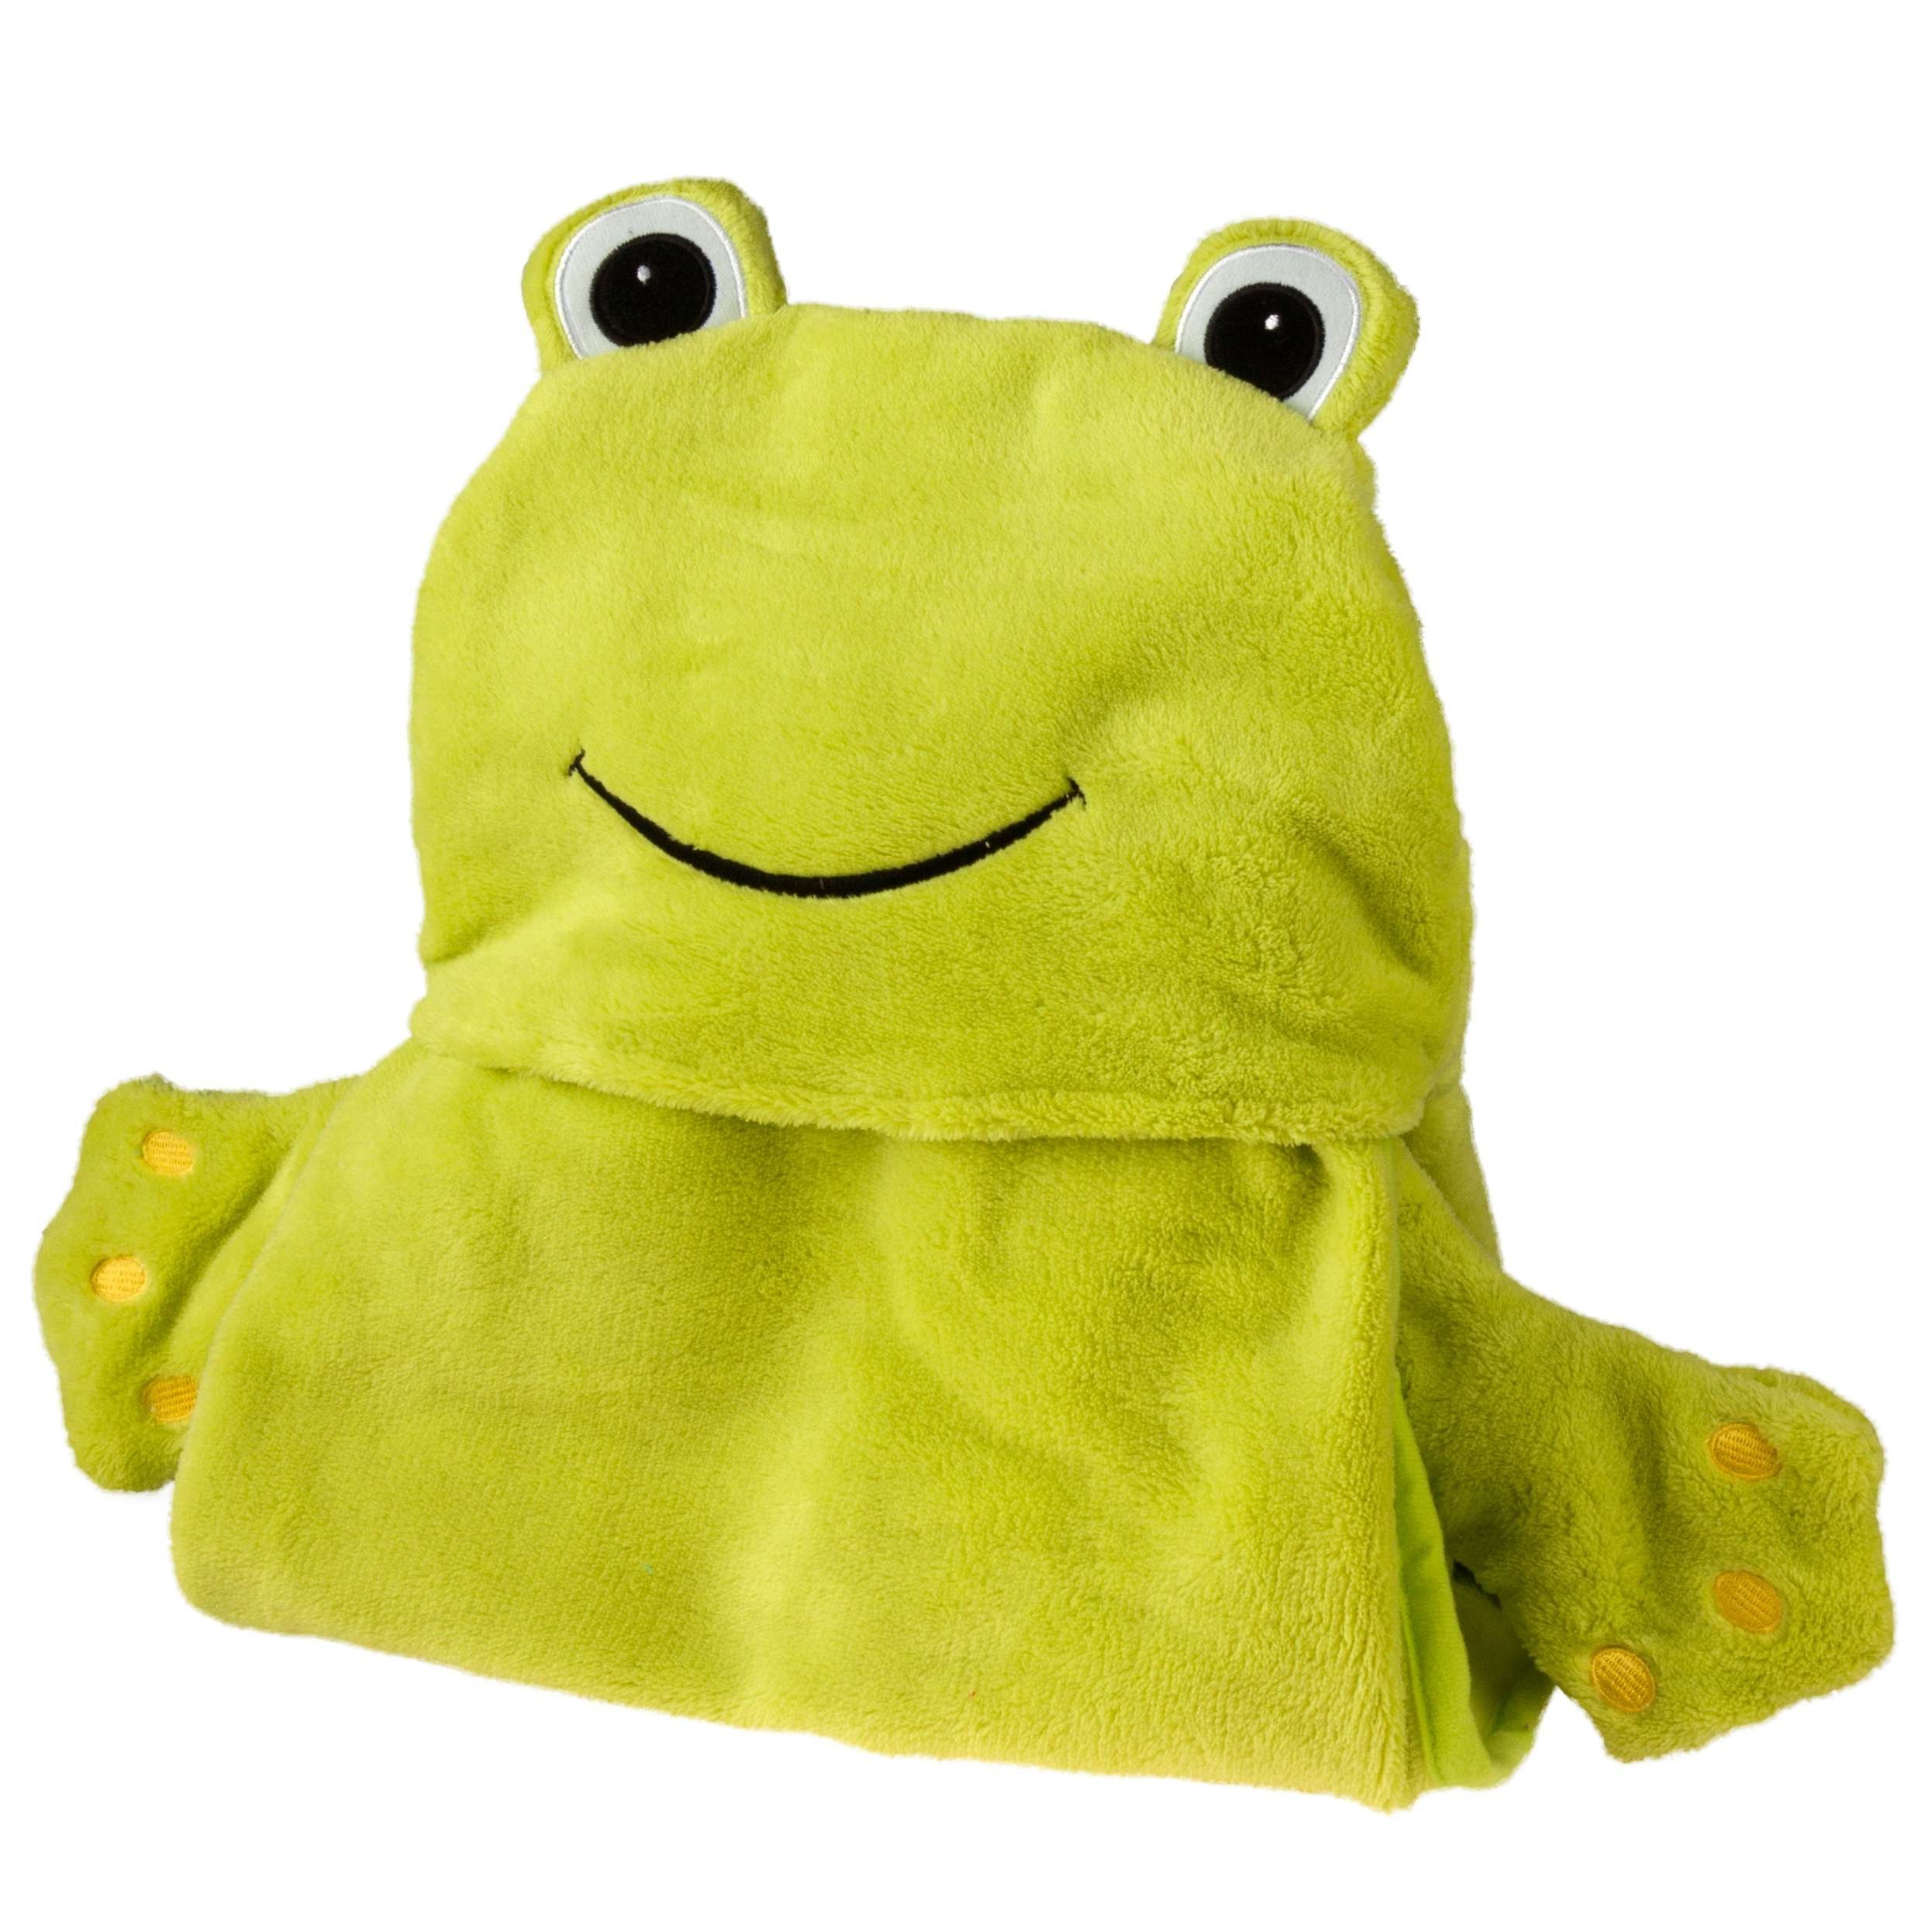 Froggy kinderdeken, knuffeldoekje, pluche deken met kap en wanten, groen 130 x 100 cm